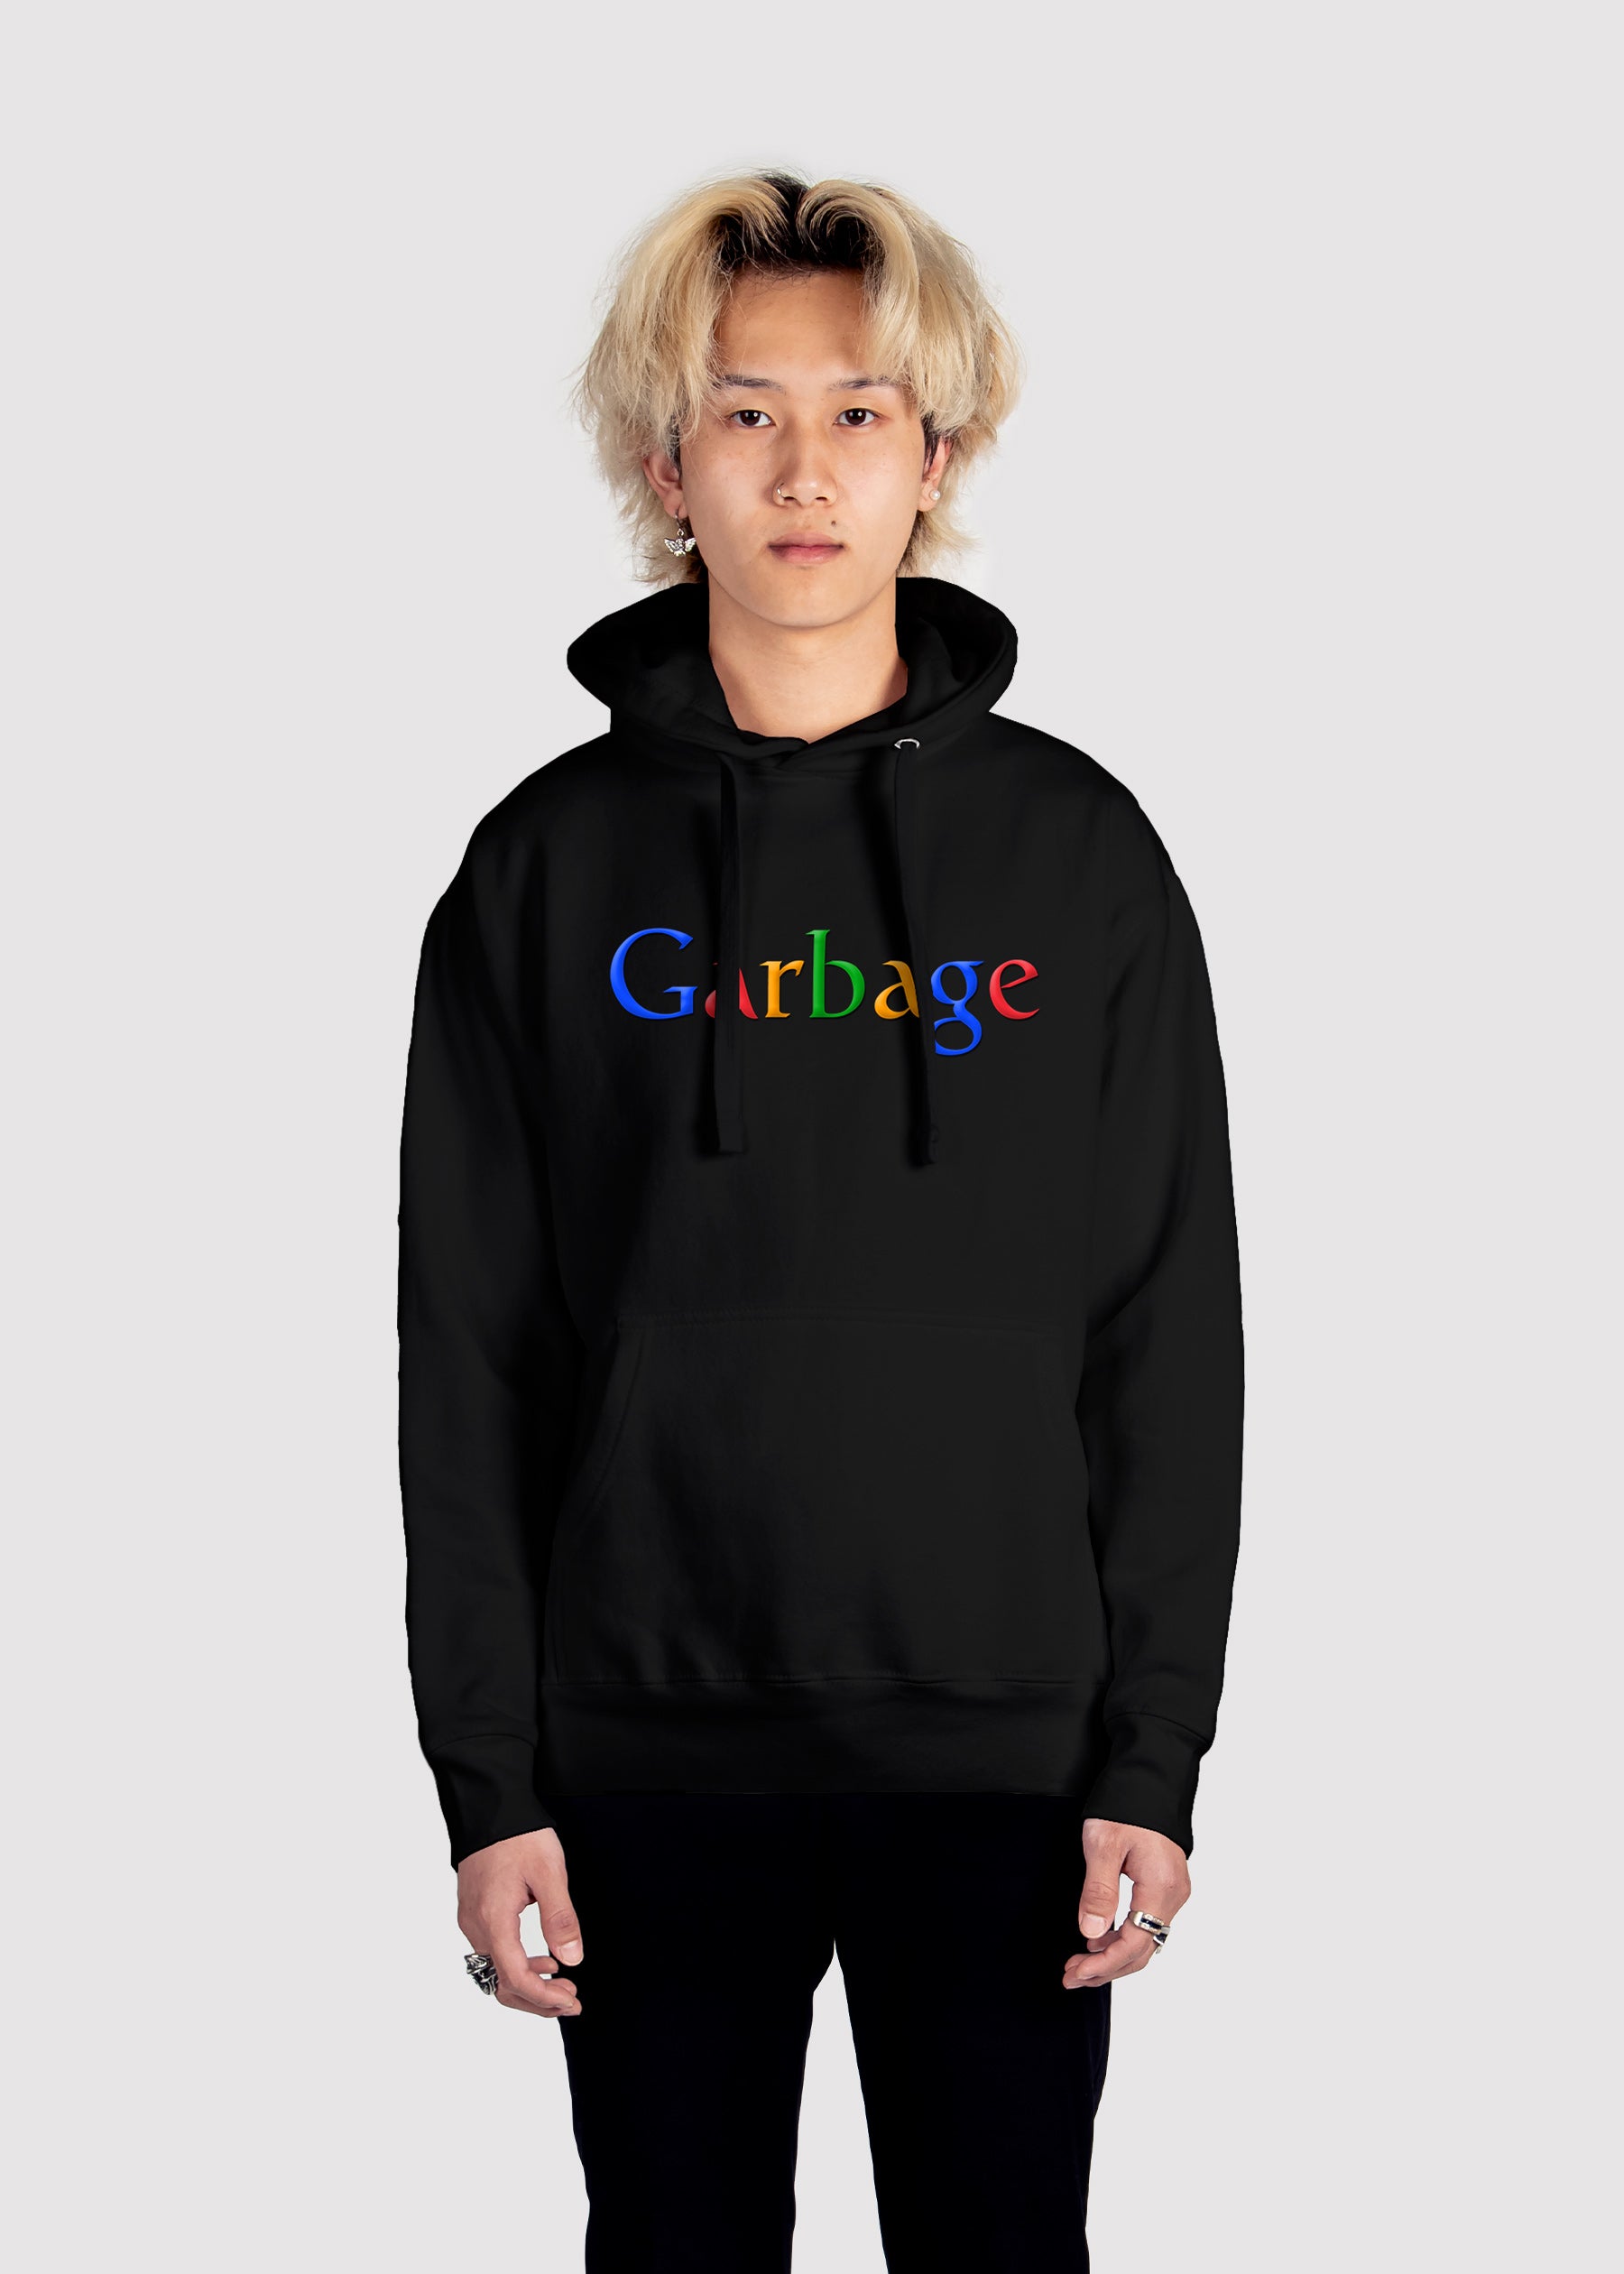 Garbage.com Hoodie